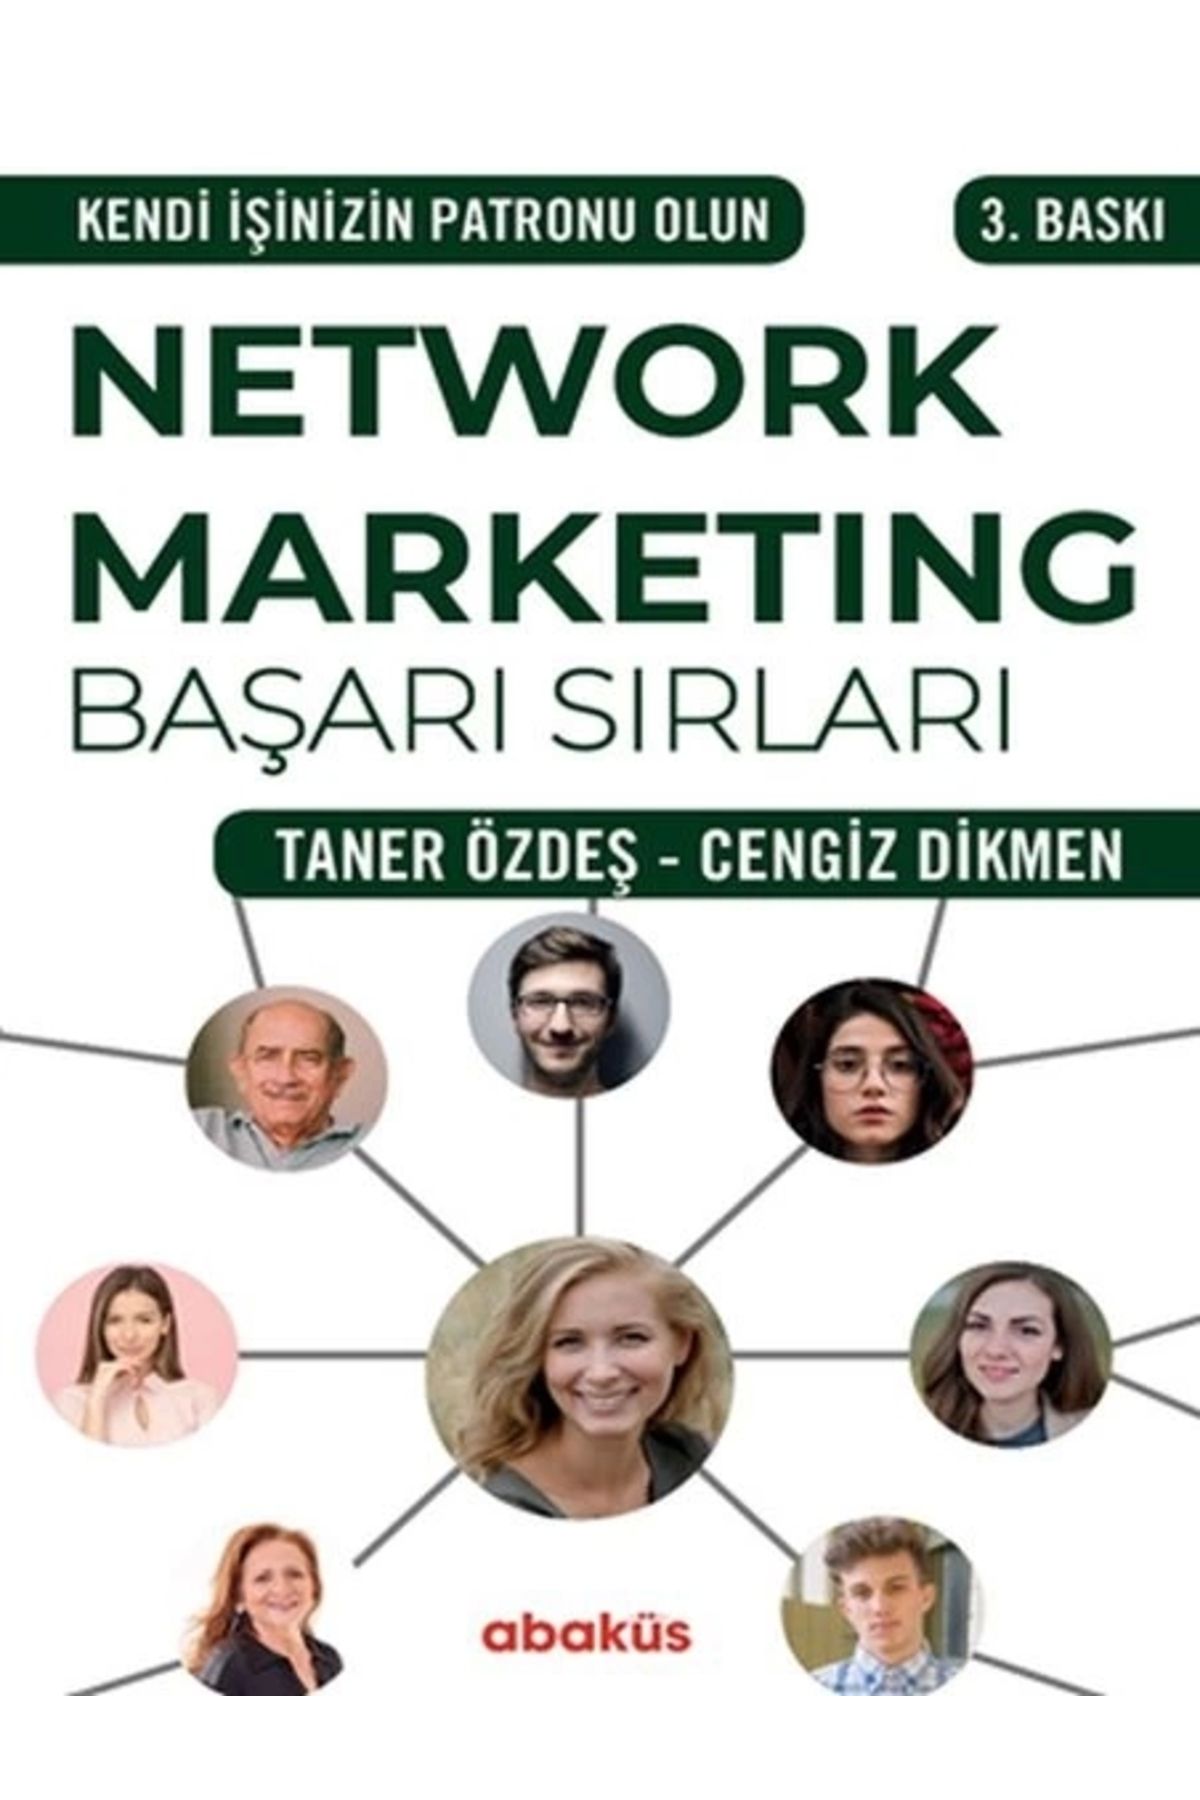 Genel Markalar Network Marketing Başarı Sırları - Kendi Işinizin Patronu Olun